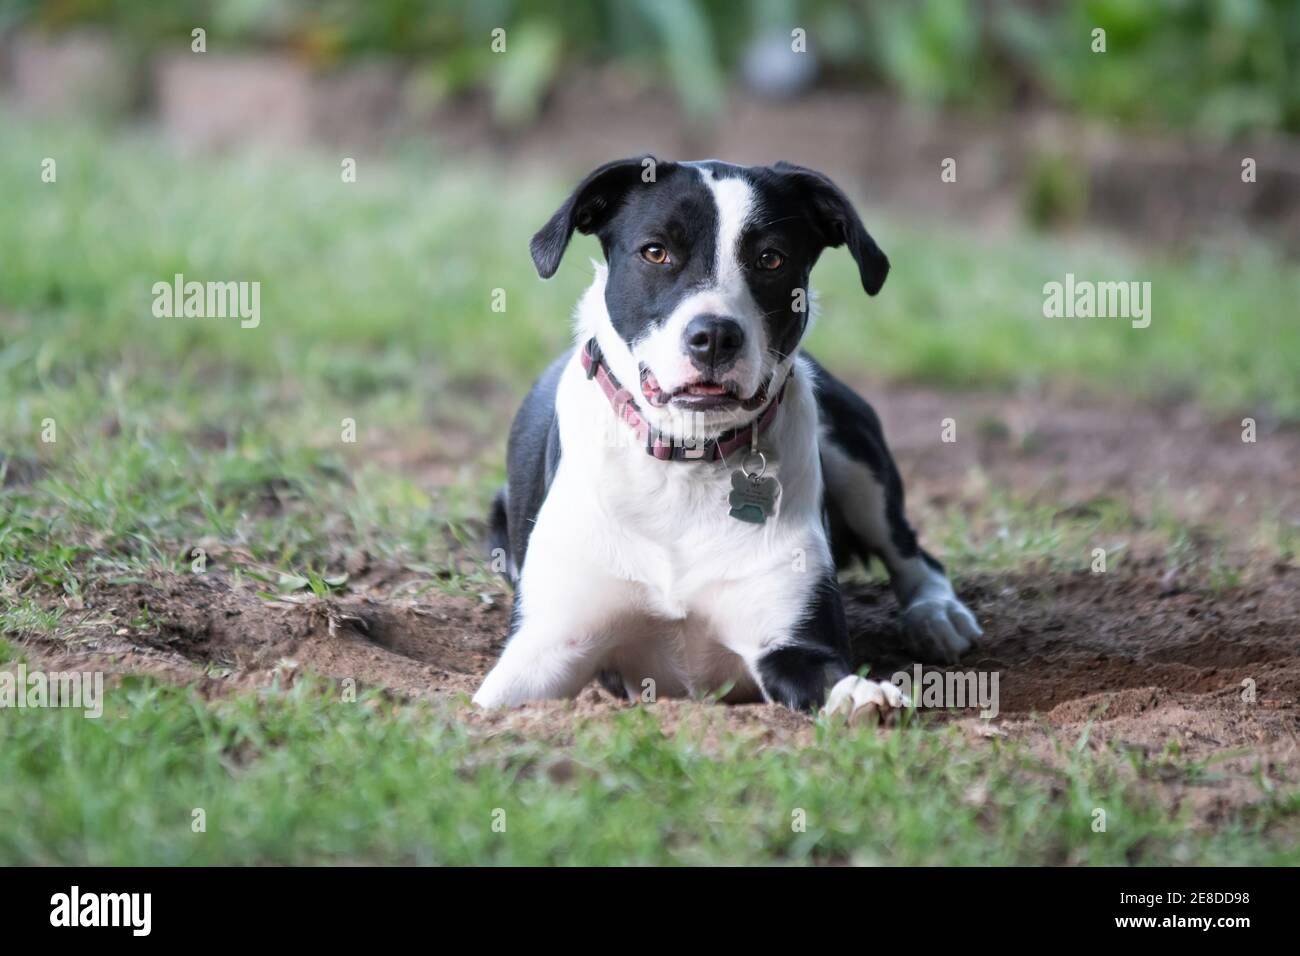 Bordo bianco e nero Collie cane incrociato guardando la fotocamera mentre si trova in un foro ha appena scavato nel cortile con sfondo sfocato. Foto Stock